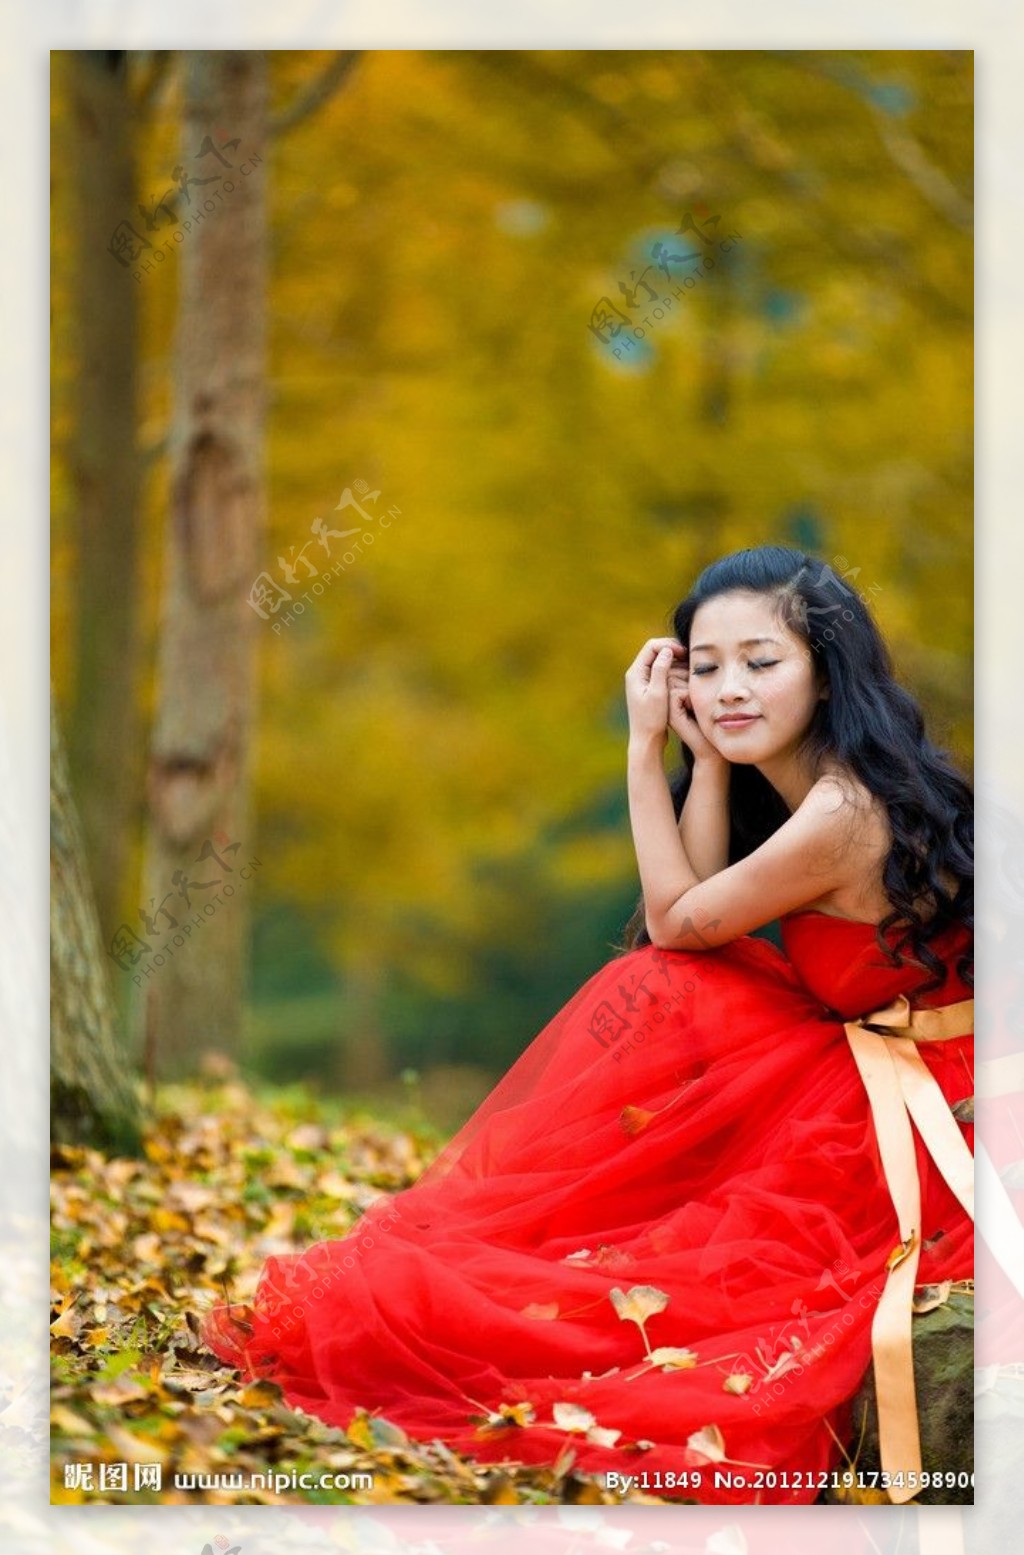 枫叶林下的红衣美女图片